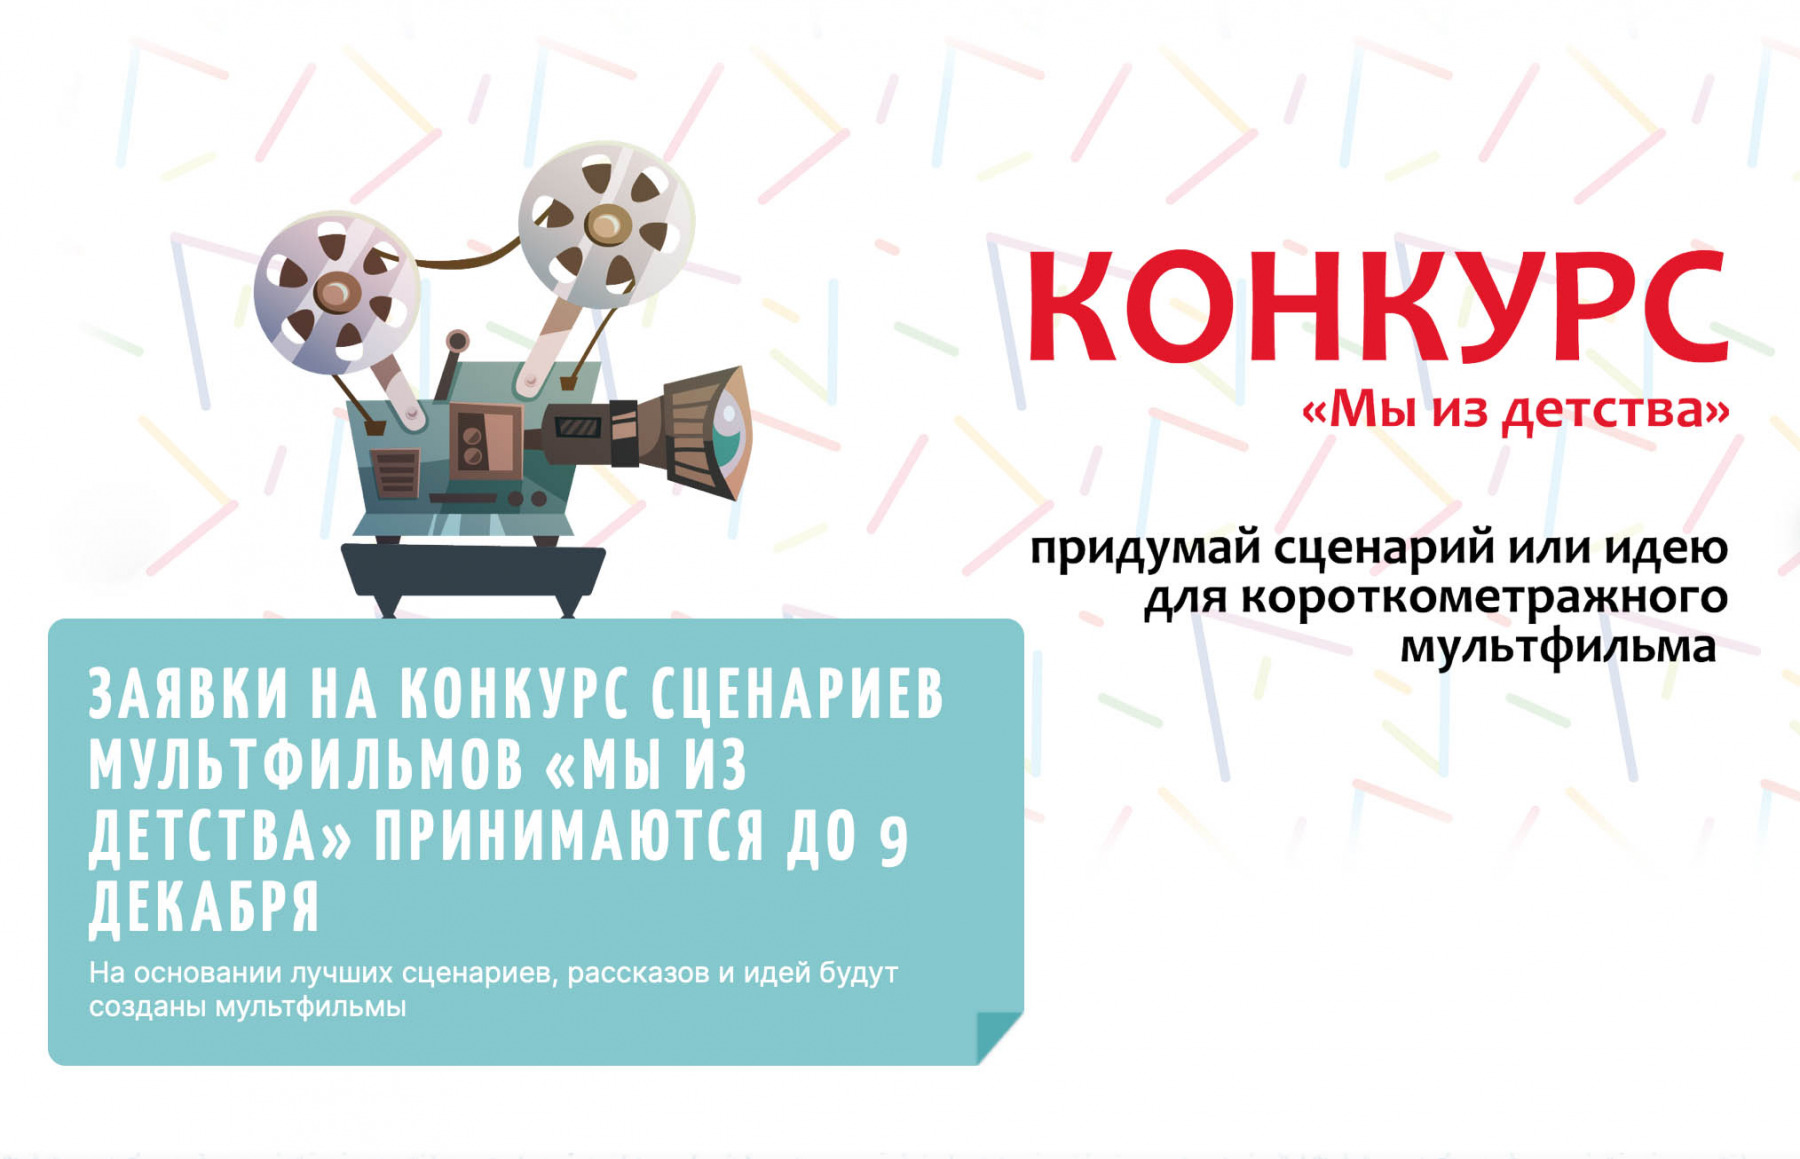 Кузбассовцы приглашаются к участию в конкурсе сценариев мультфильмов «Мы из детства»